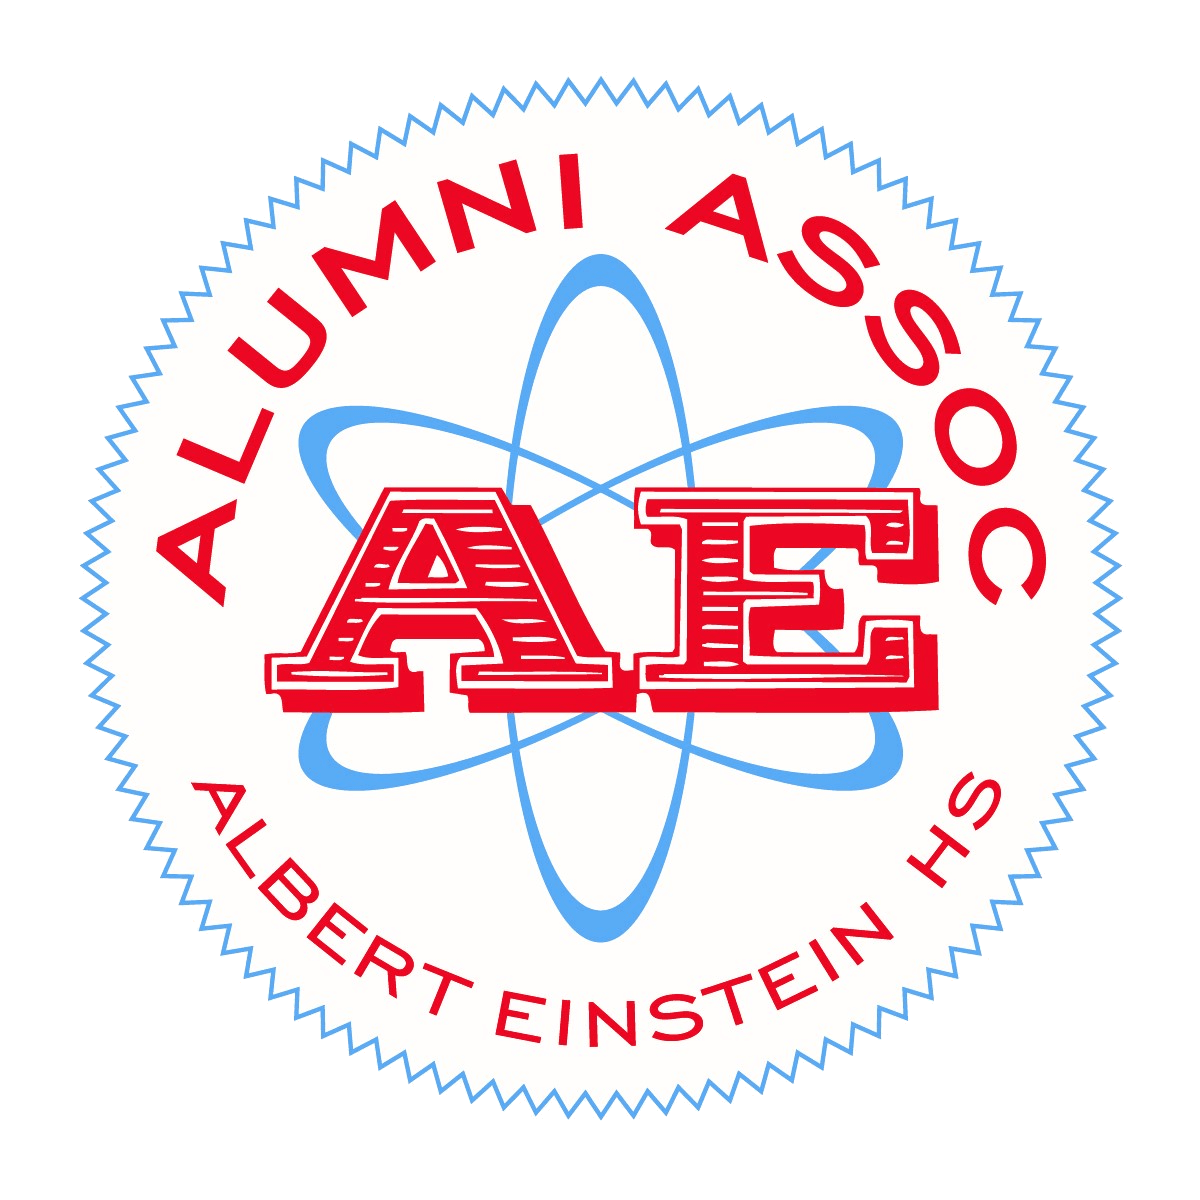 Albert Einstein High School Alumni Association logo